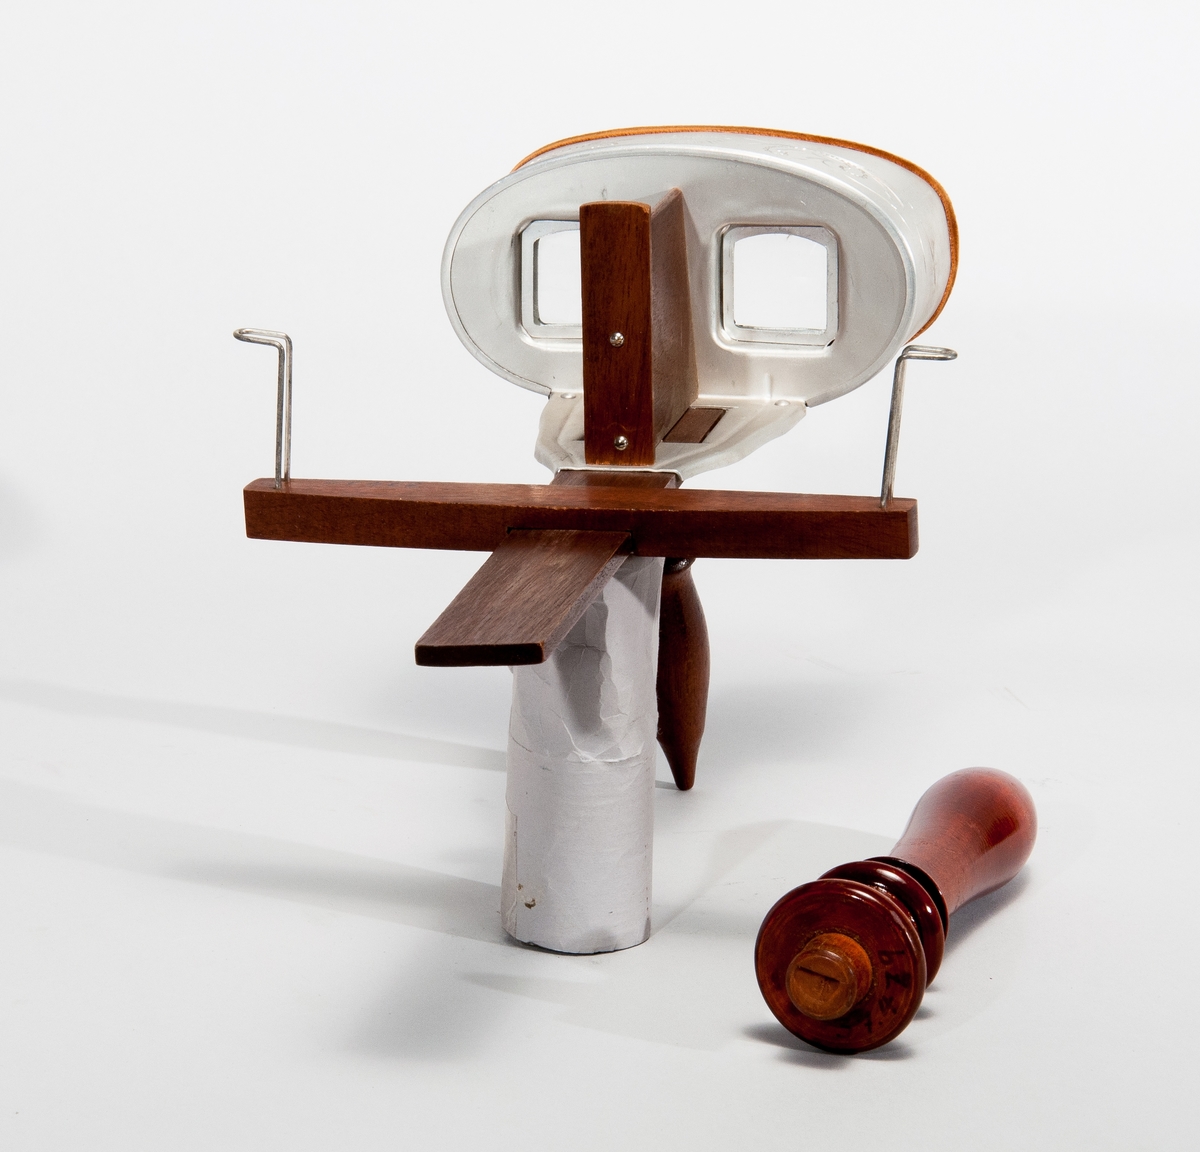 Hohner's stereoskop i lyxutförande, komplett med bildhållare och handtag.
Tillbehör: Trähandtag.